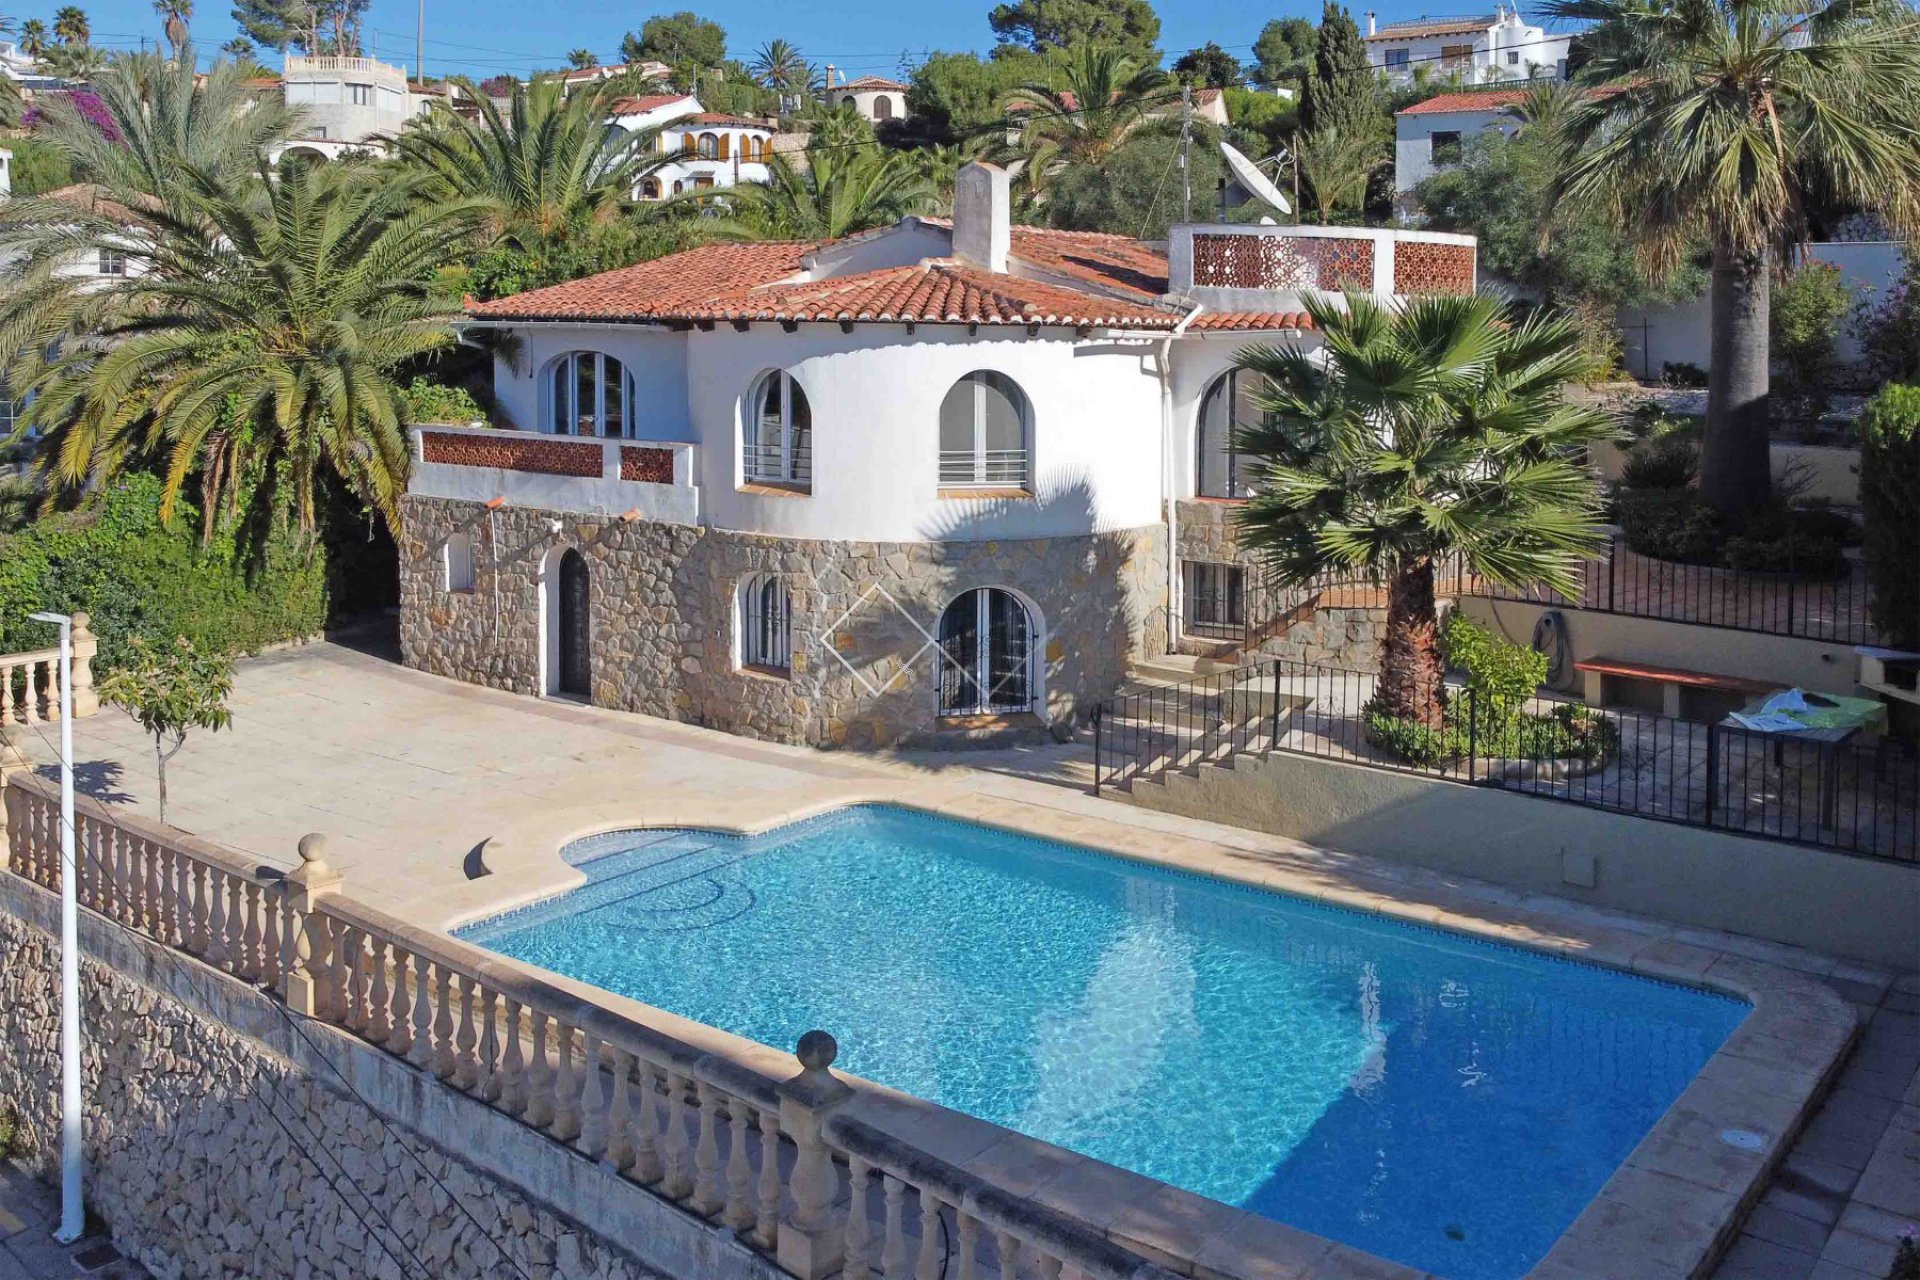 Villa und Pool - Renovierte Villa zu verkaufen in Benissa, 400m vom Strand